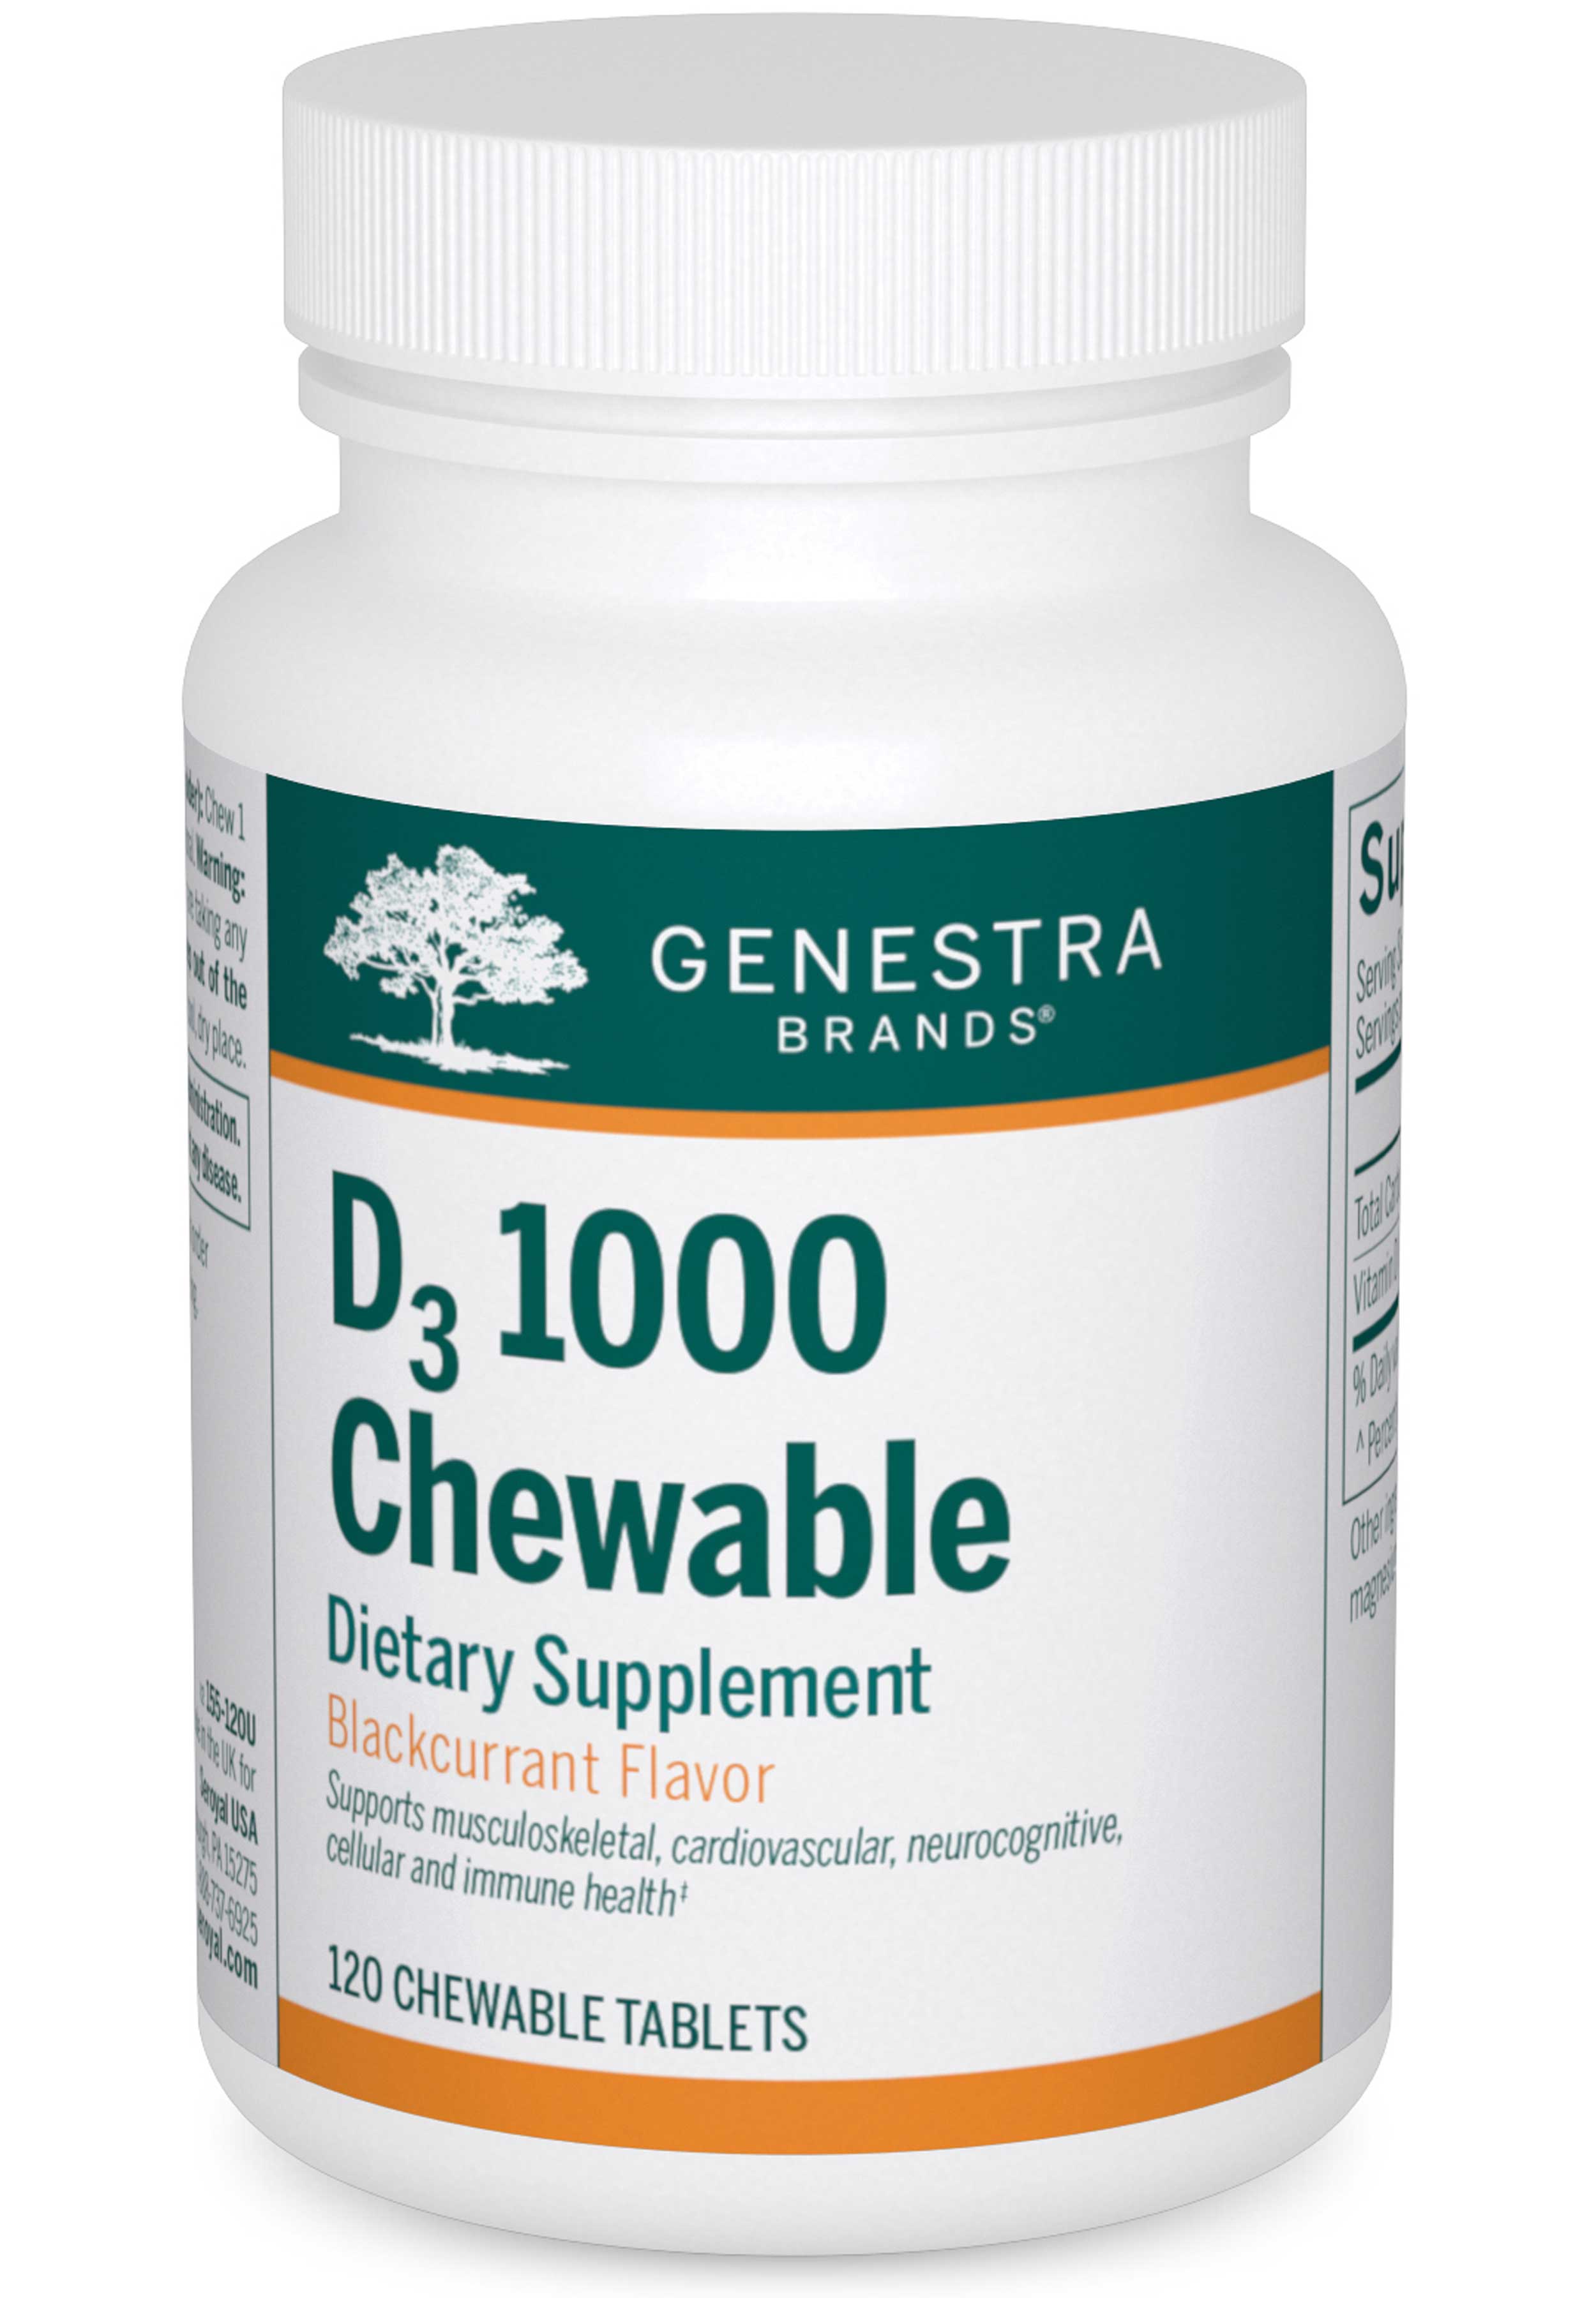 Genestra Brands D3 1000 Chewable